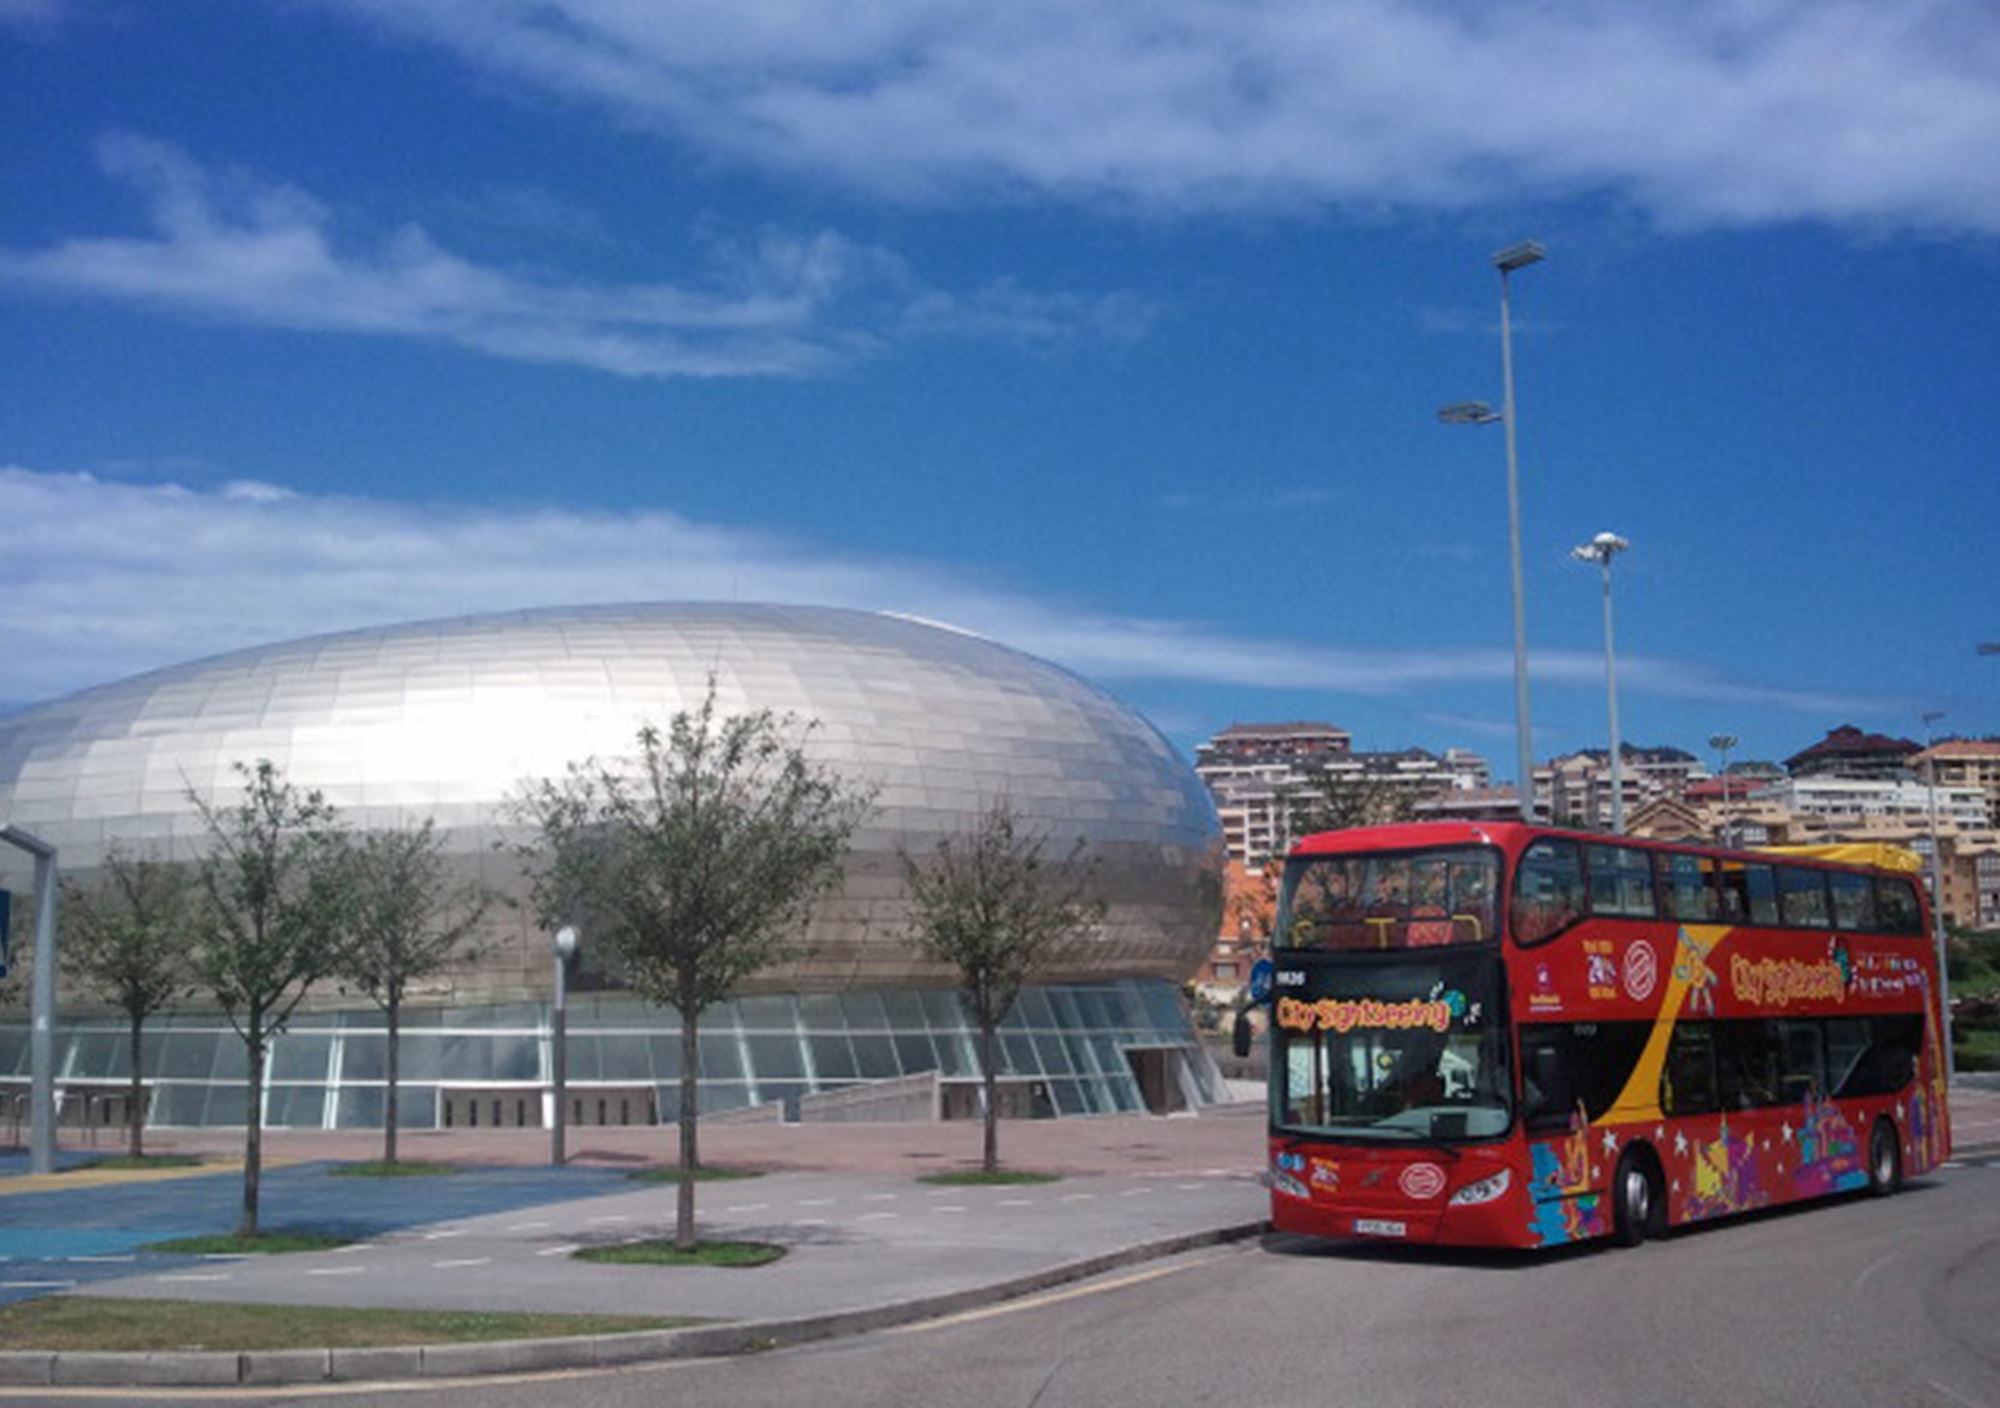 kaufen tickets besucht Touren Fahrkarte karten Touristikbus City Sightseeing Santander